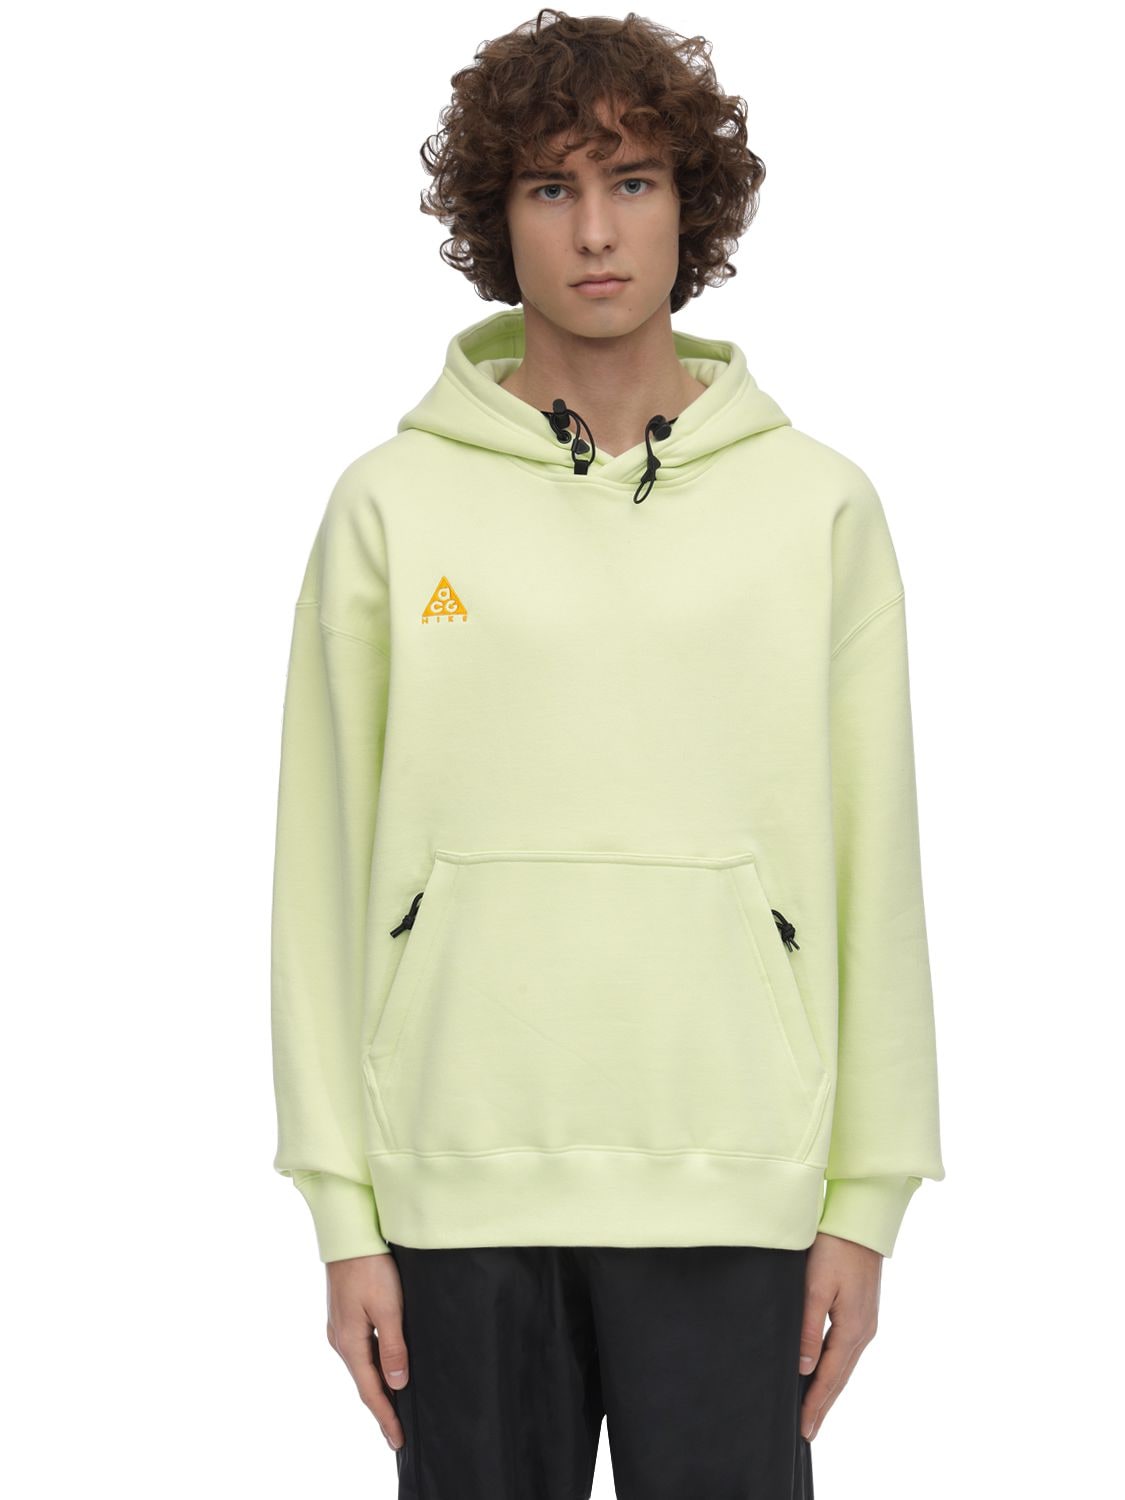 Nike Acg Nrg Sweatshirt Hoodie In Luminous Green